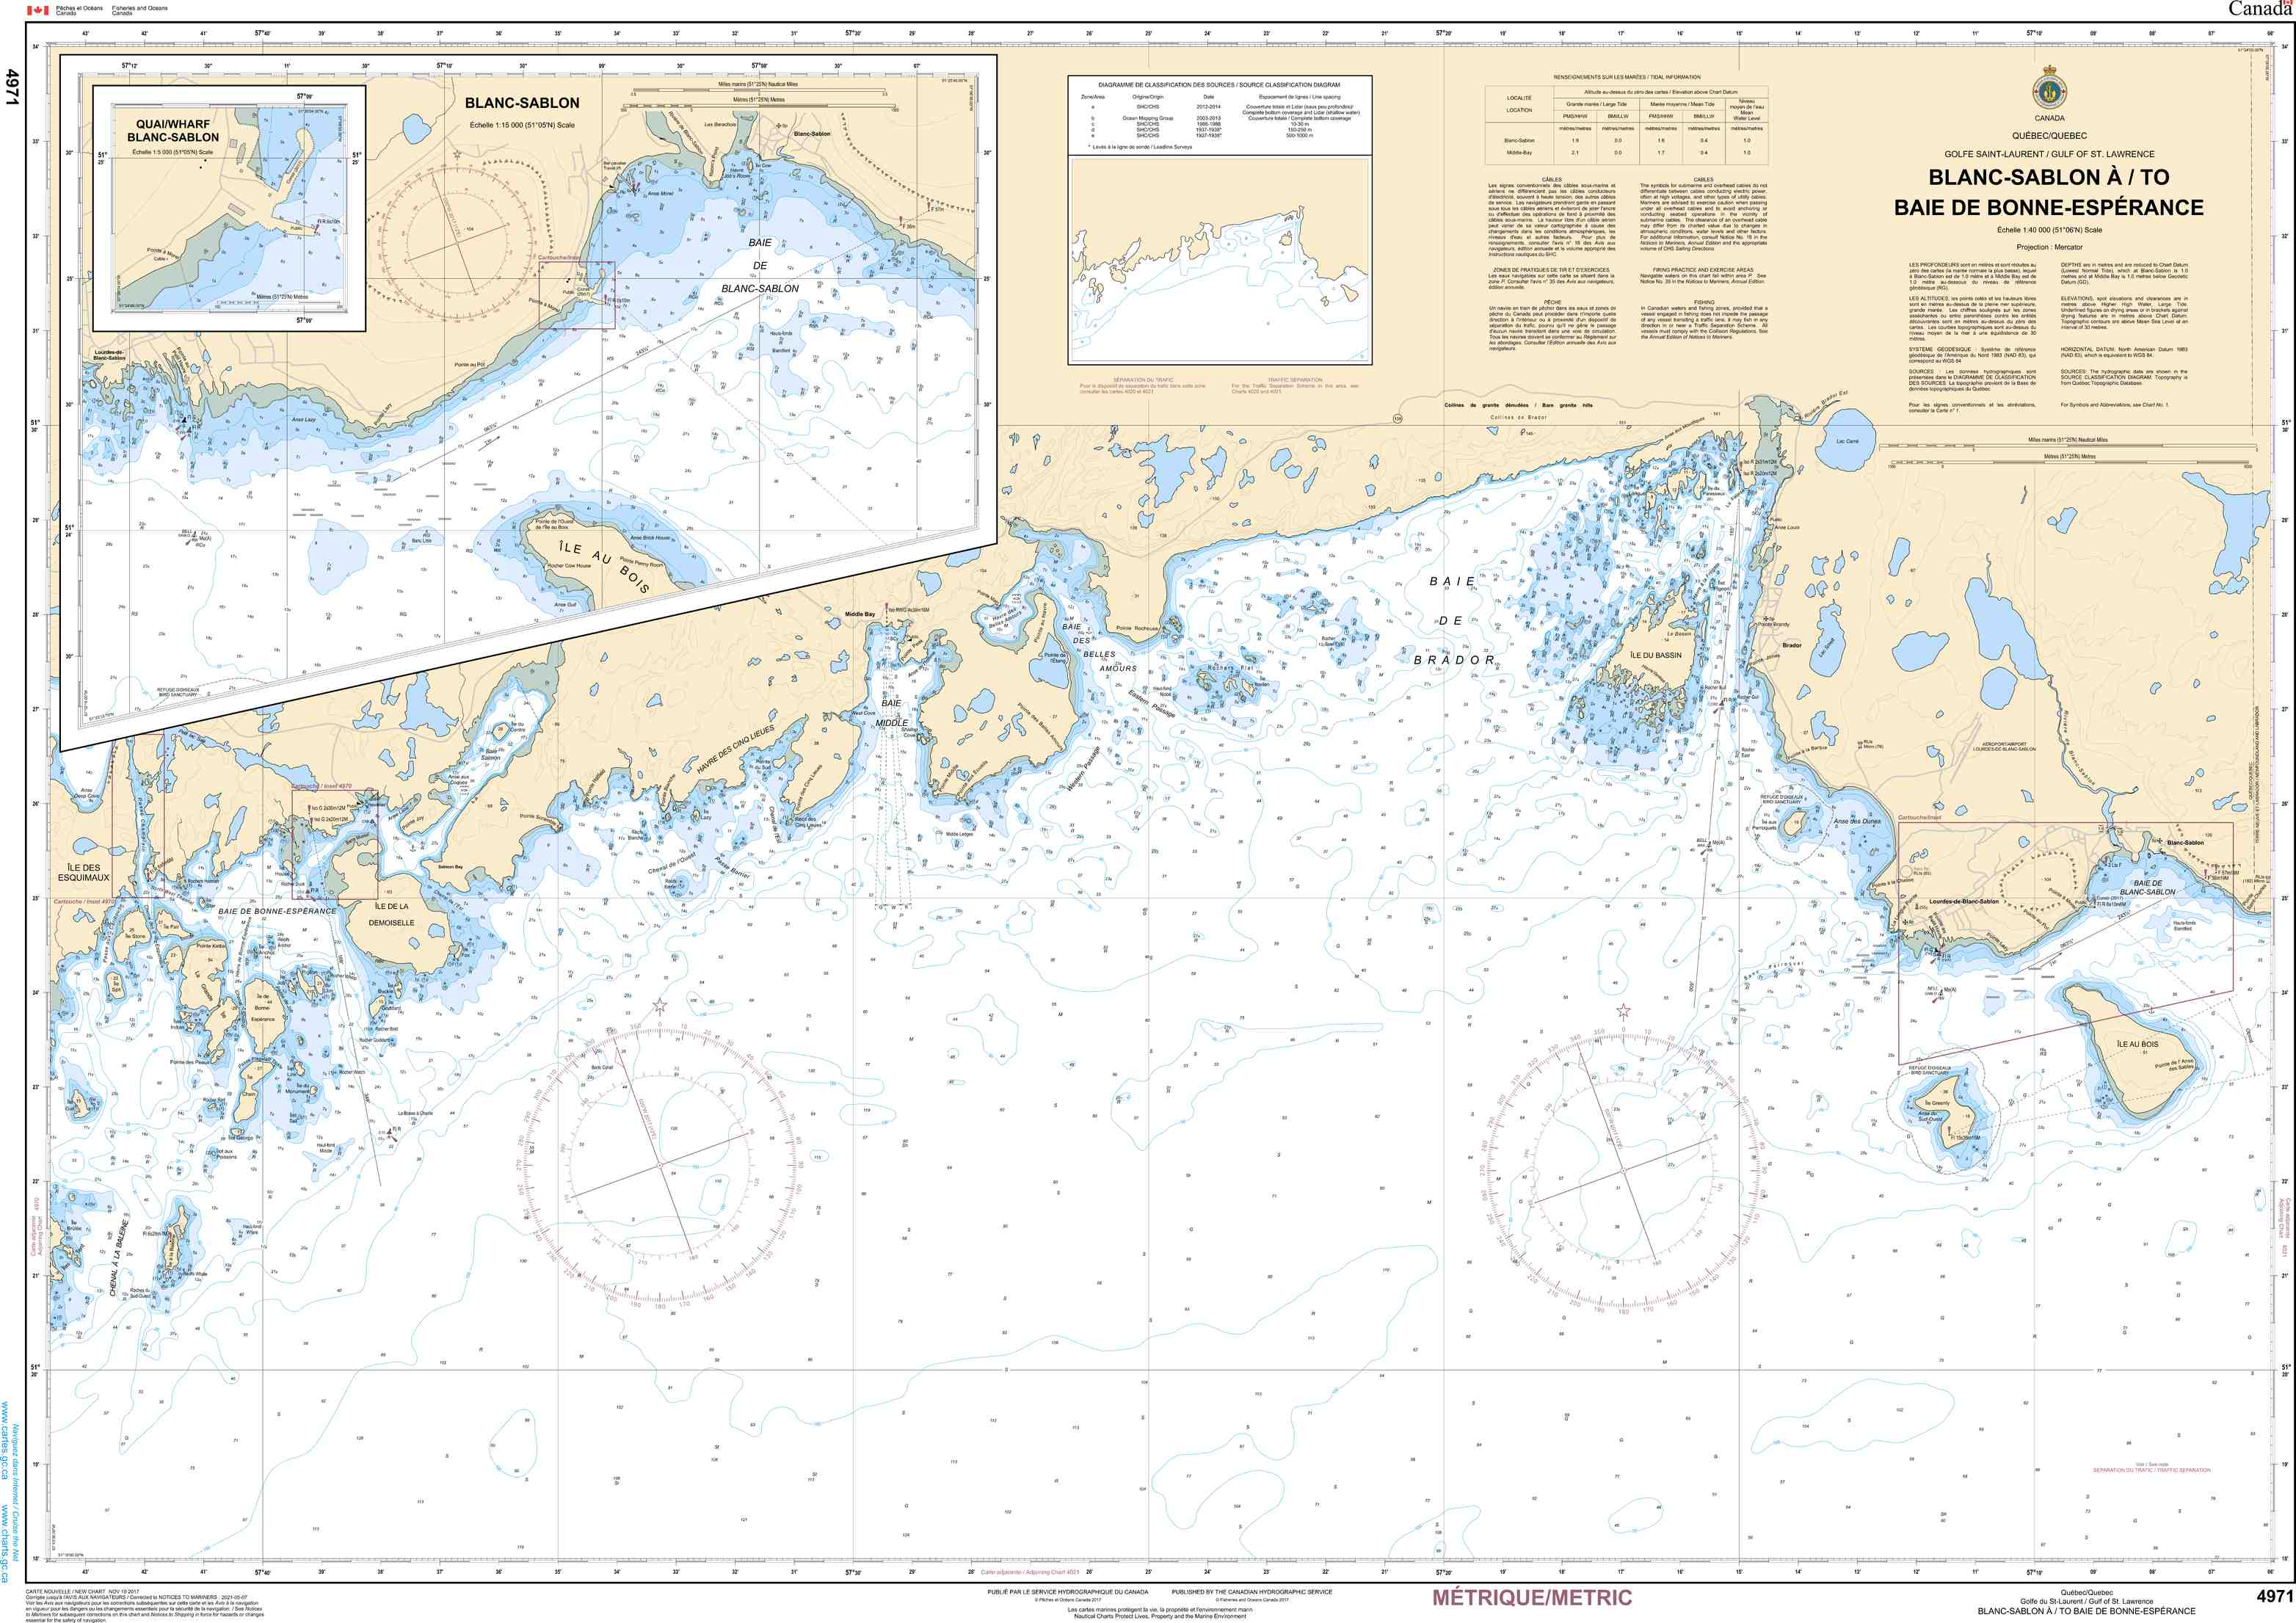 Canadian Hydrographic Service Nautical Chart CHS4971: Blanc Sablon à/to Baie de Bonne-Espérance